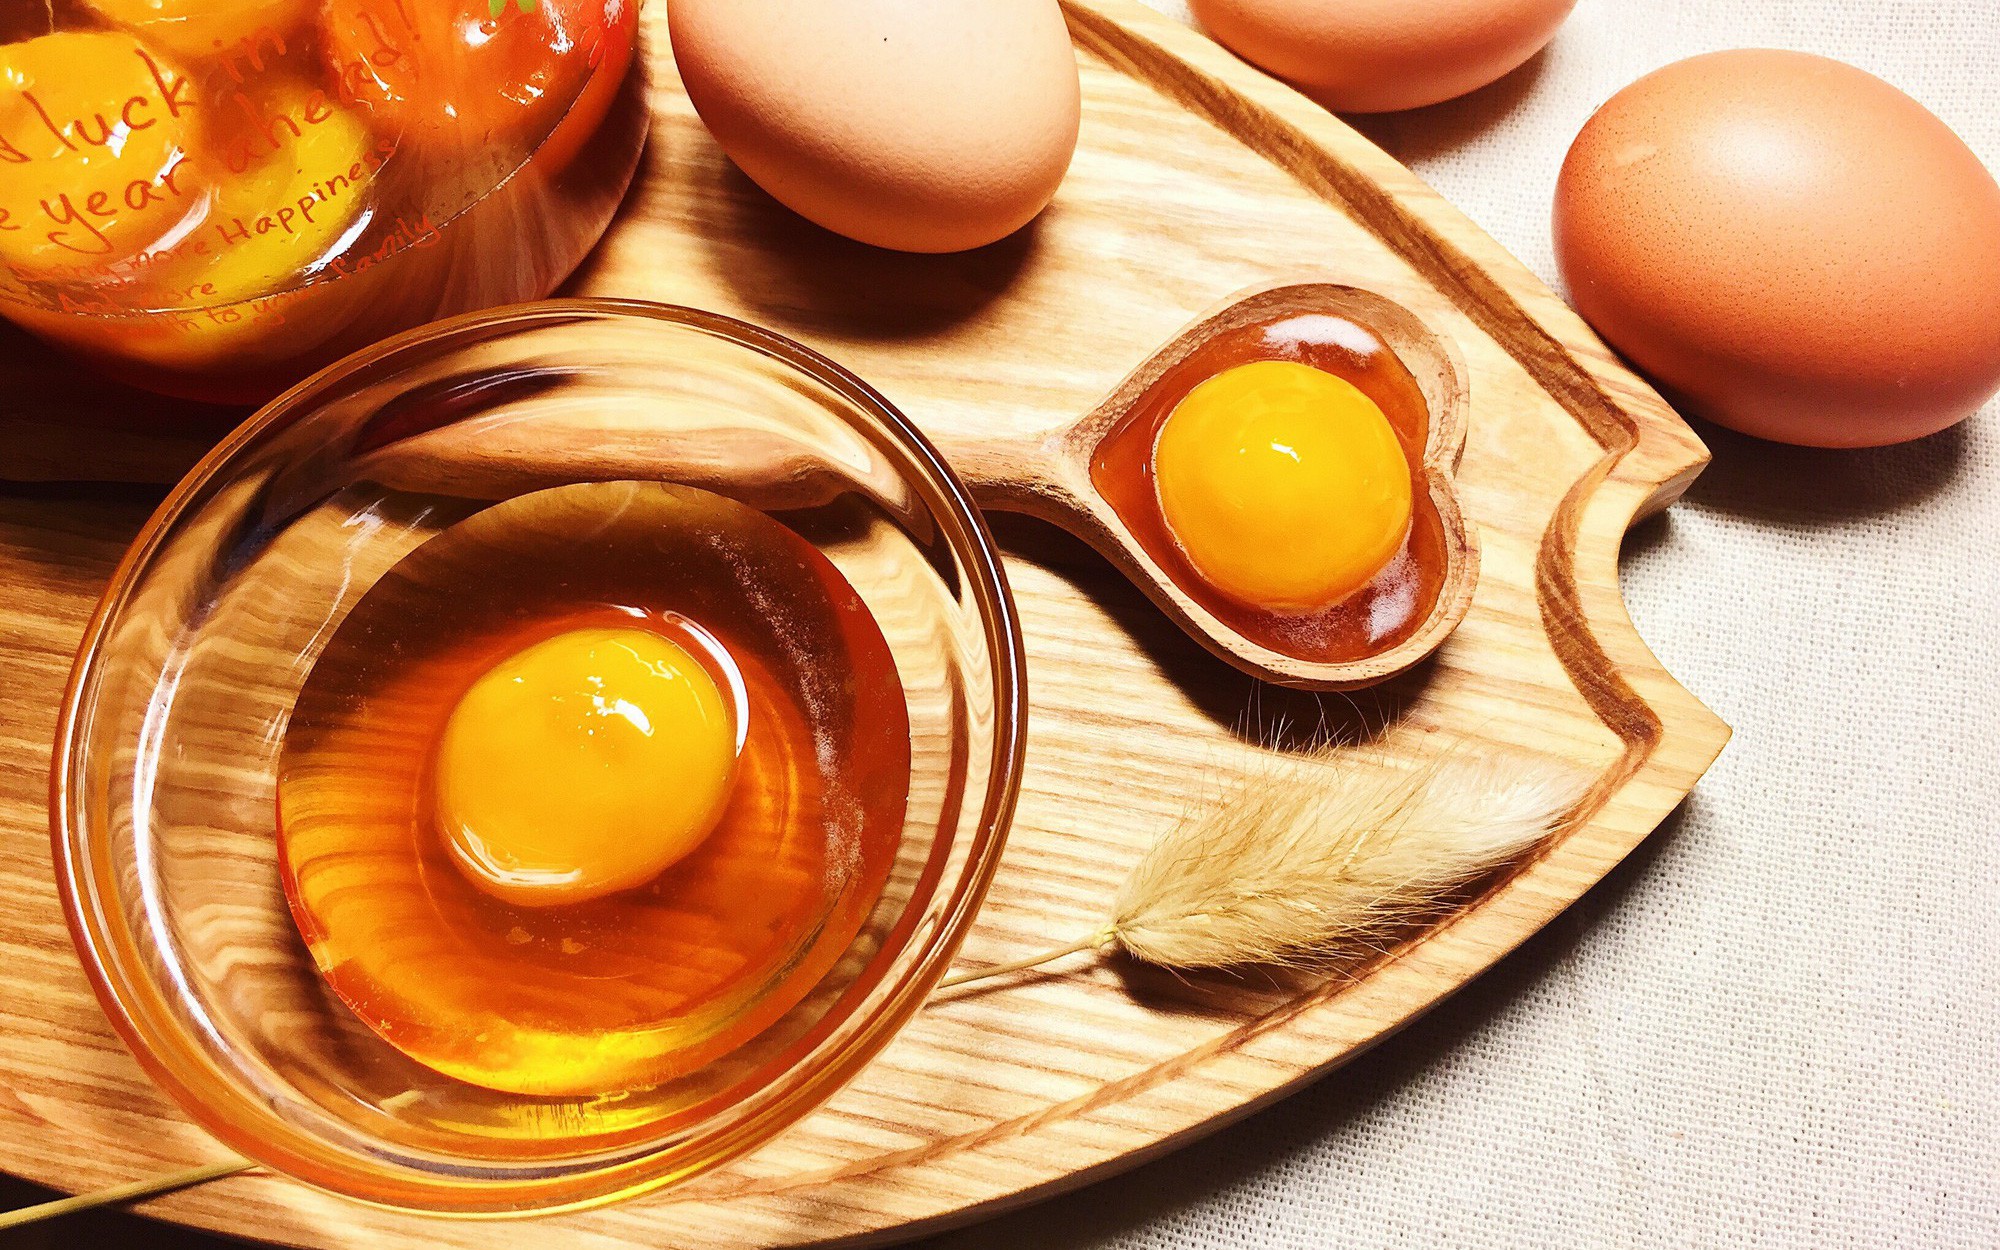   Bạn có thể bổ sung vitamin B7 trong lòng đỏ trứng gà  